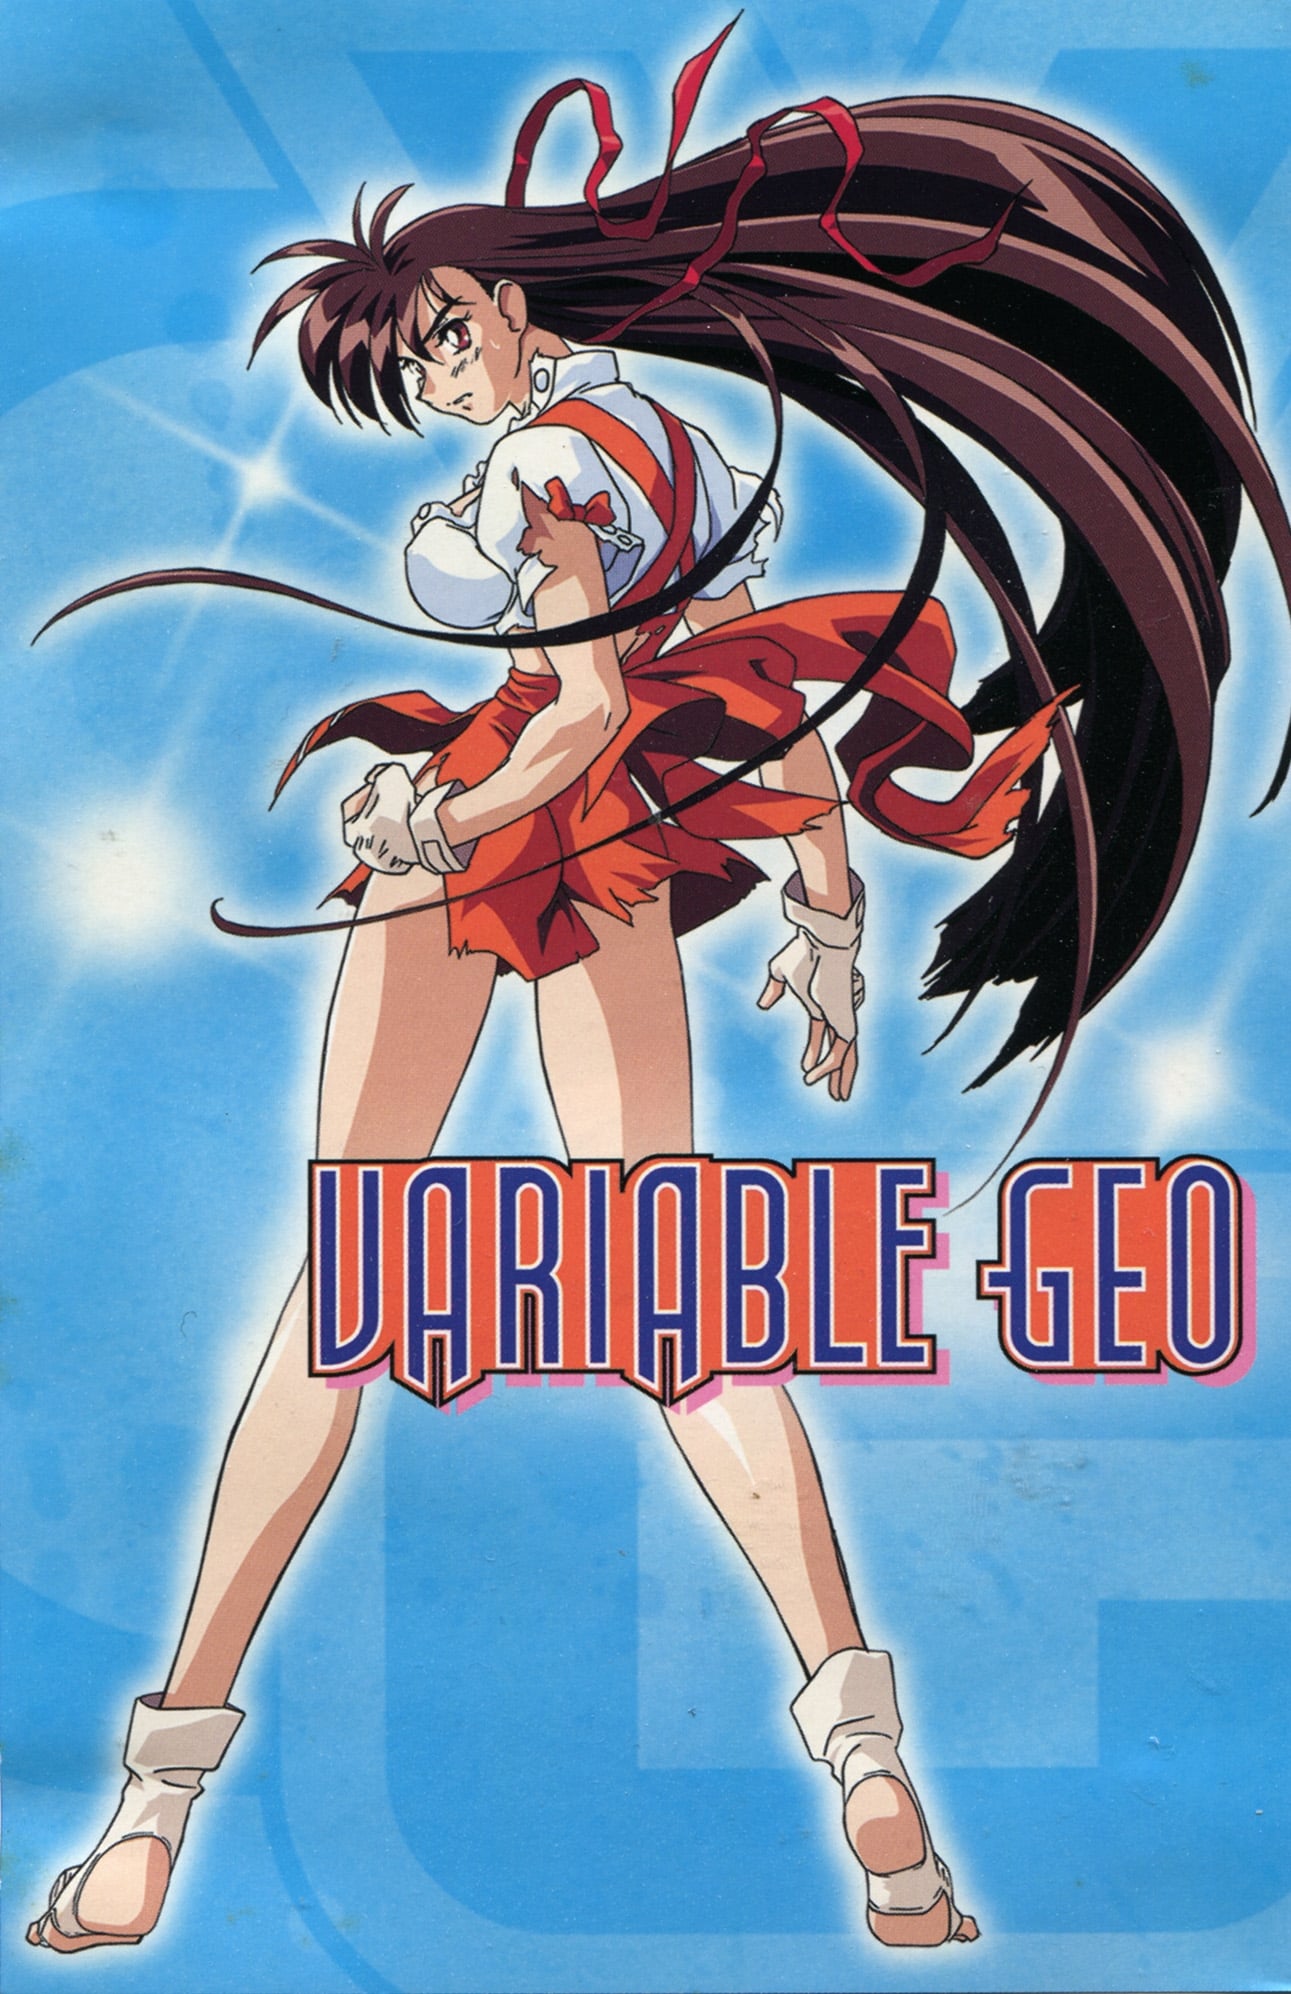 Variable Geo (2007)